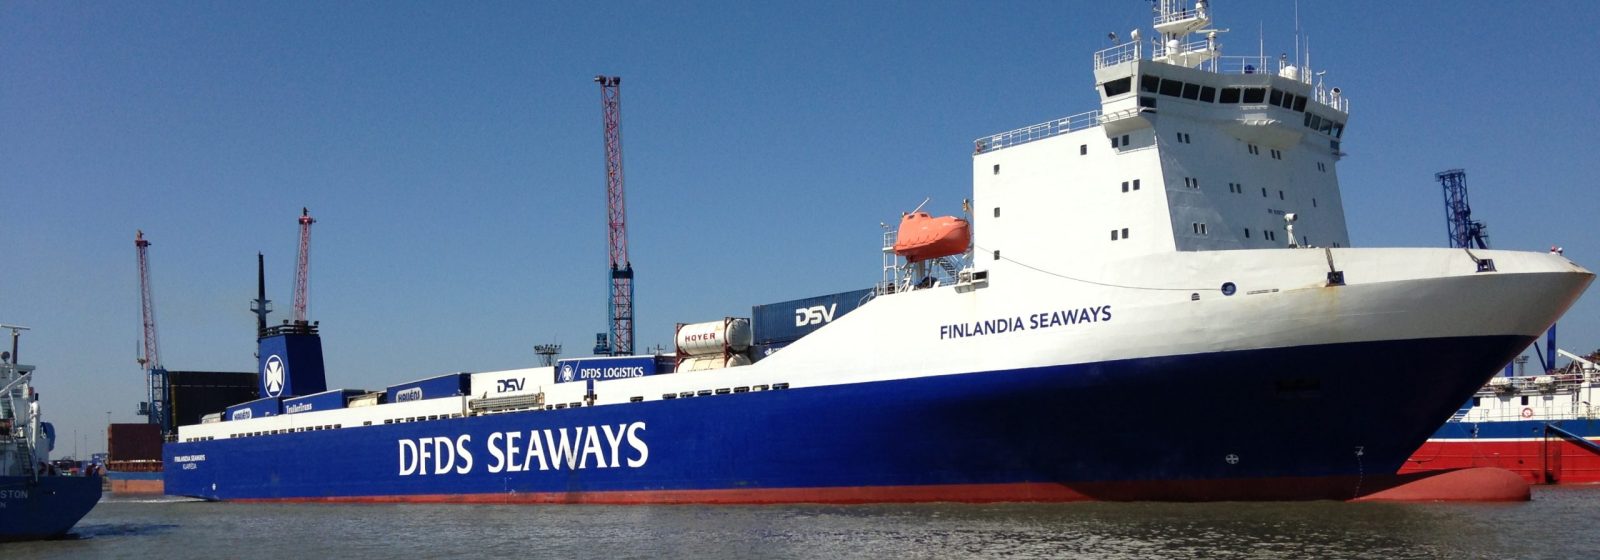 20220616 DFDS Finlandia Seaways